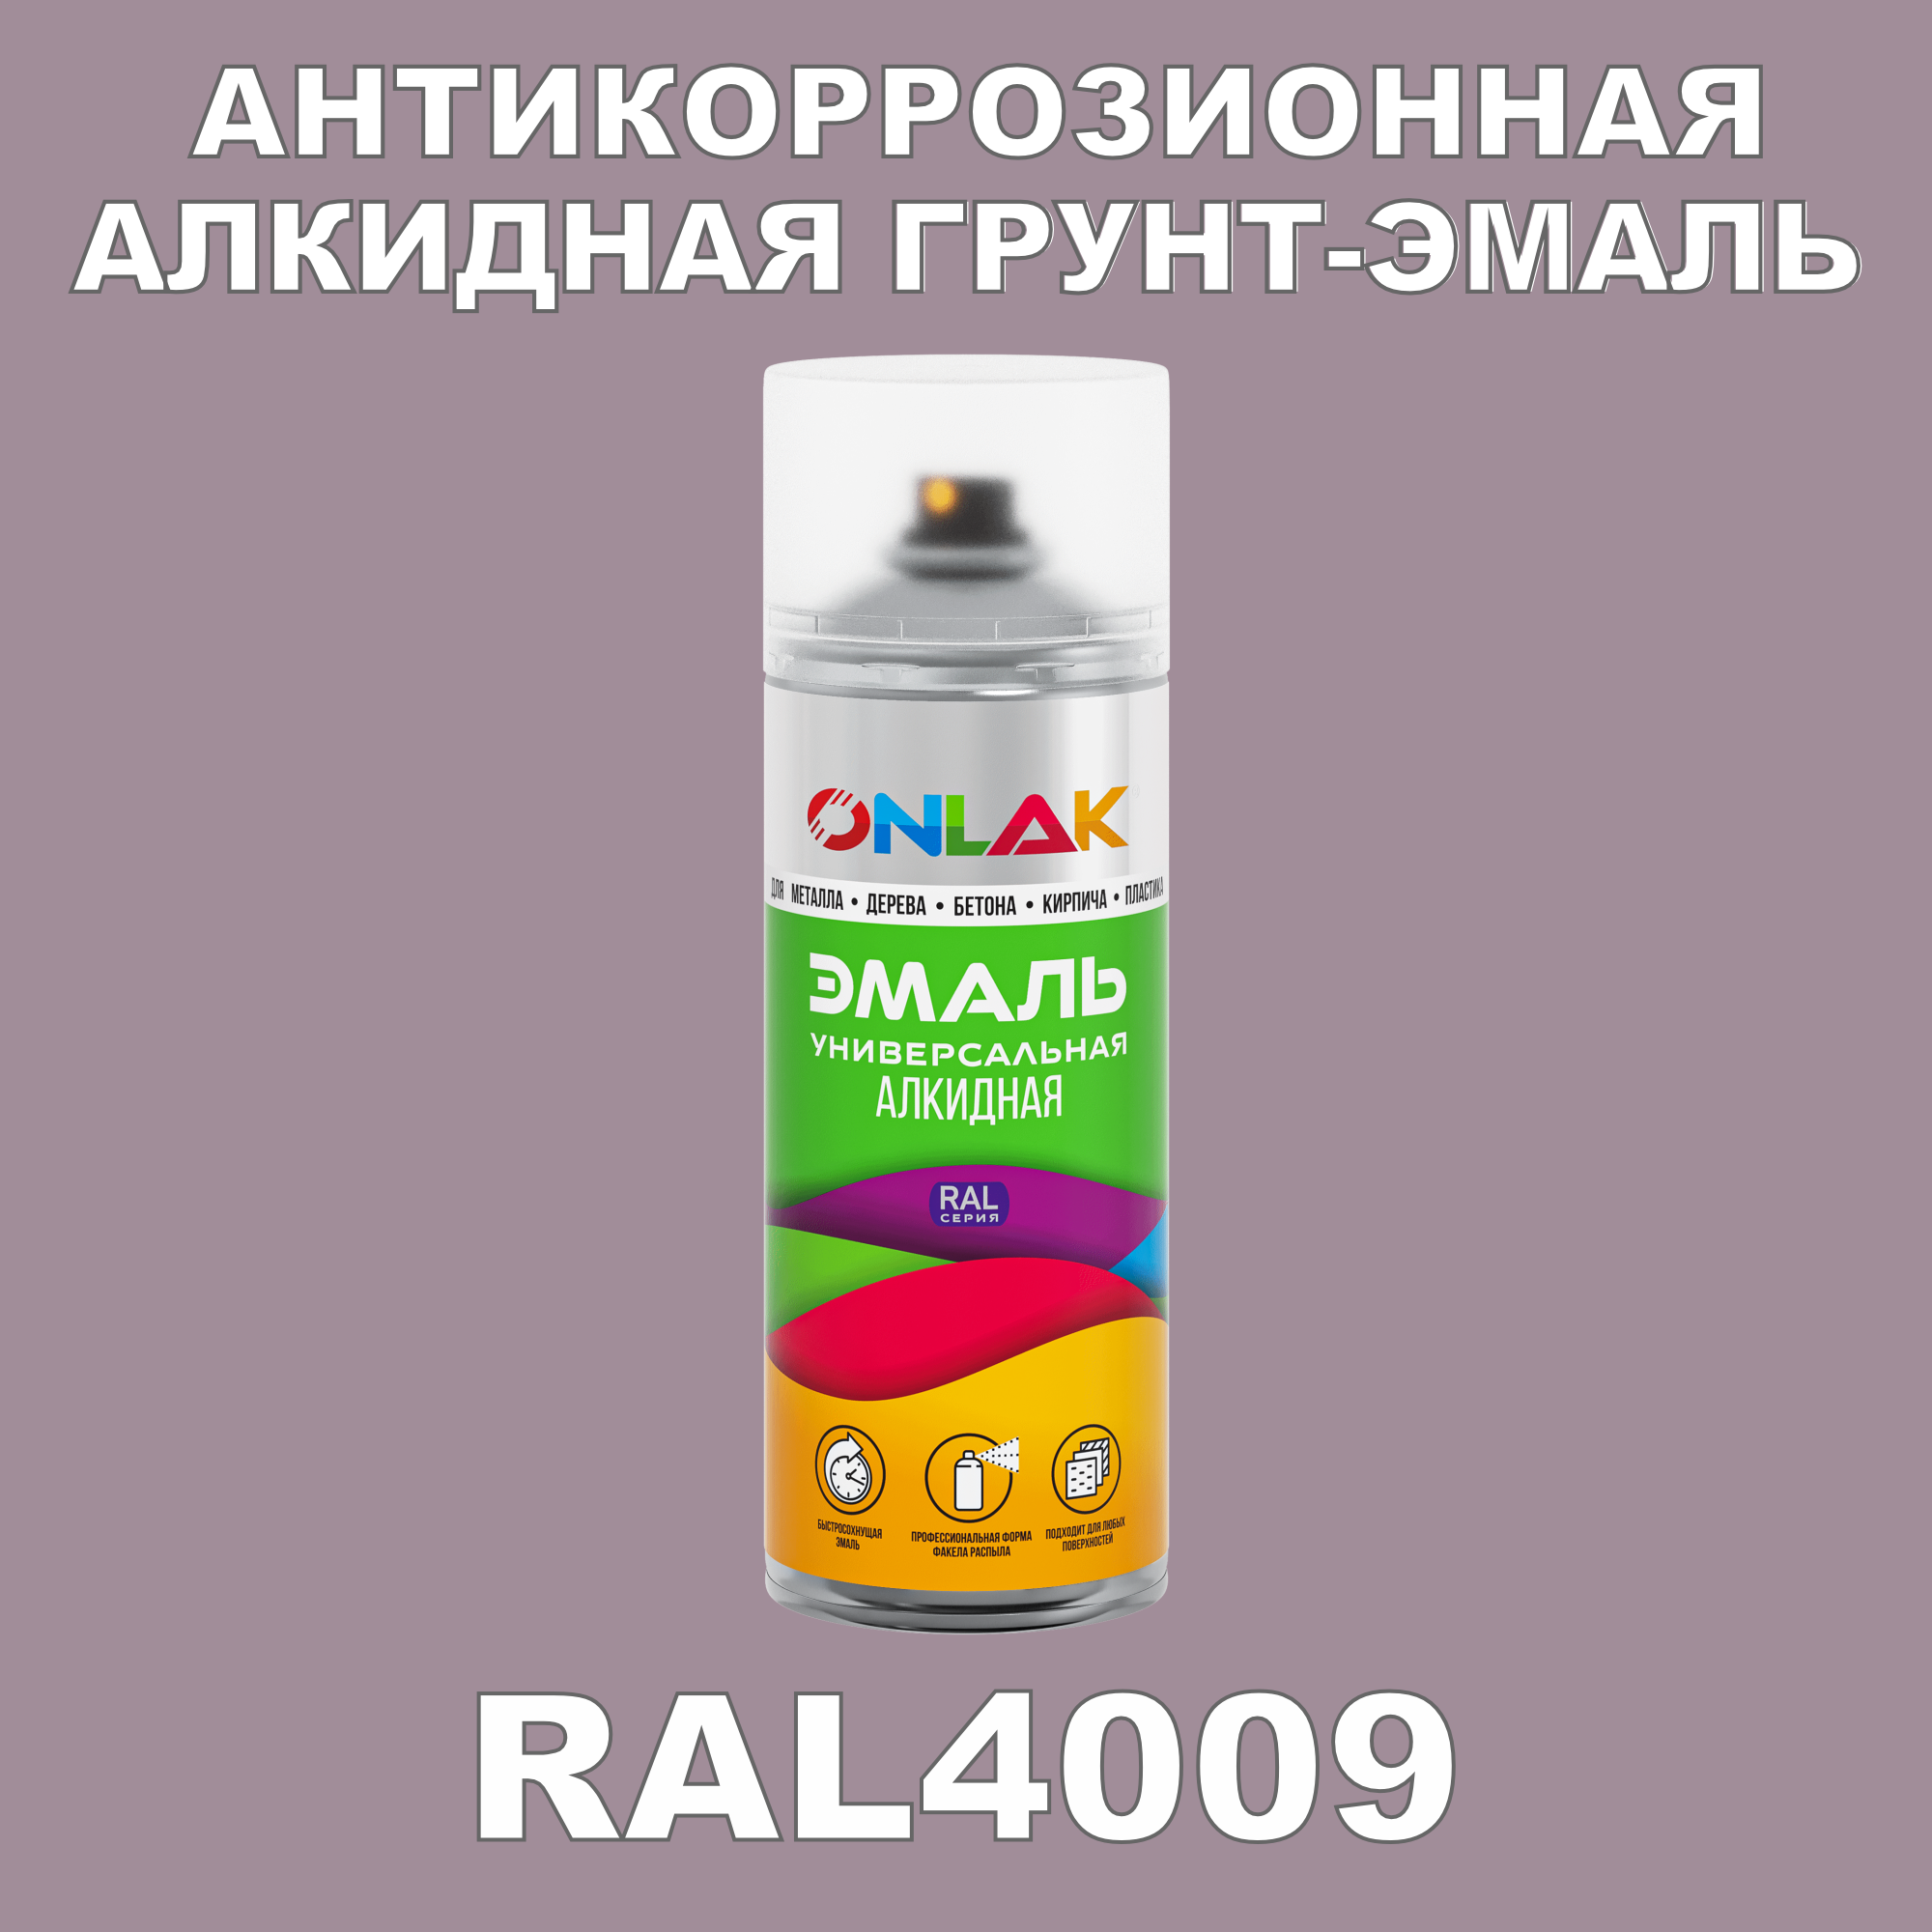 Антикоррозионная грунт-эмаль ONLAK RAL 4009,фиолетовый,593 мл artuniq color violet цветной грунт для аквариума фиолетовый 1 кг